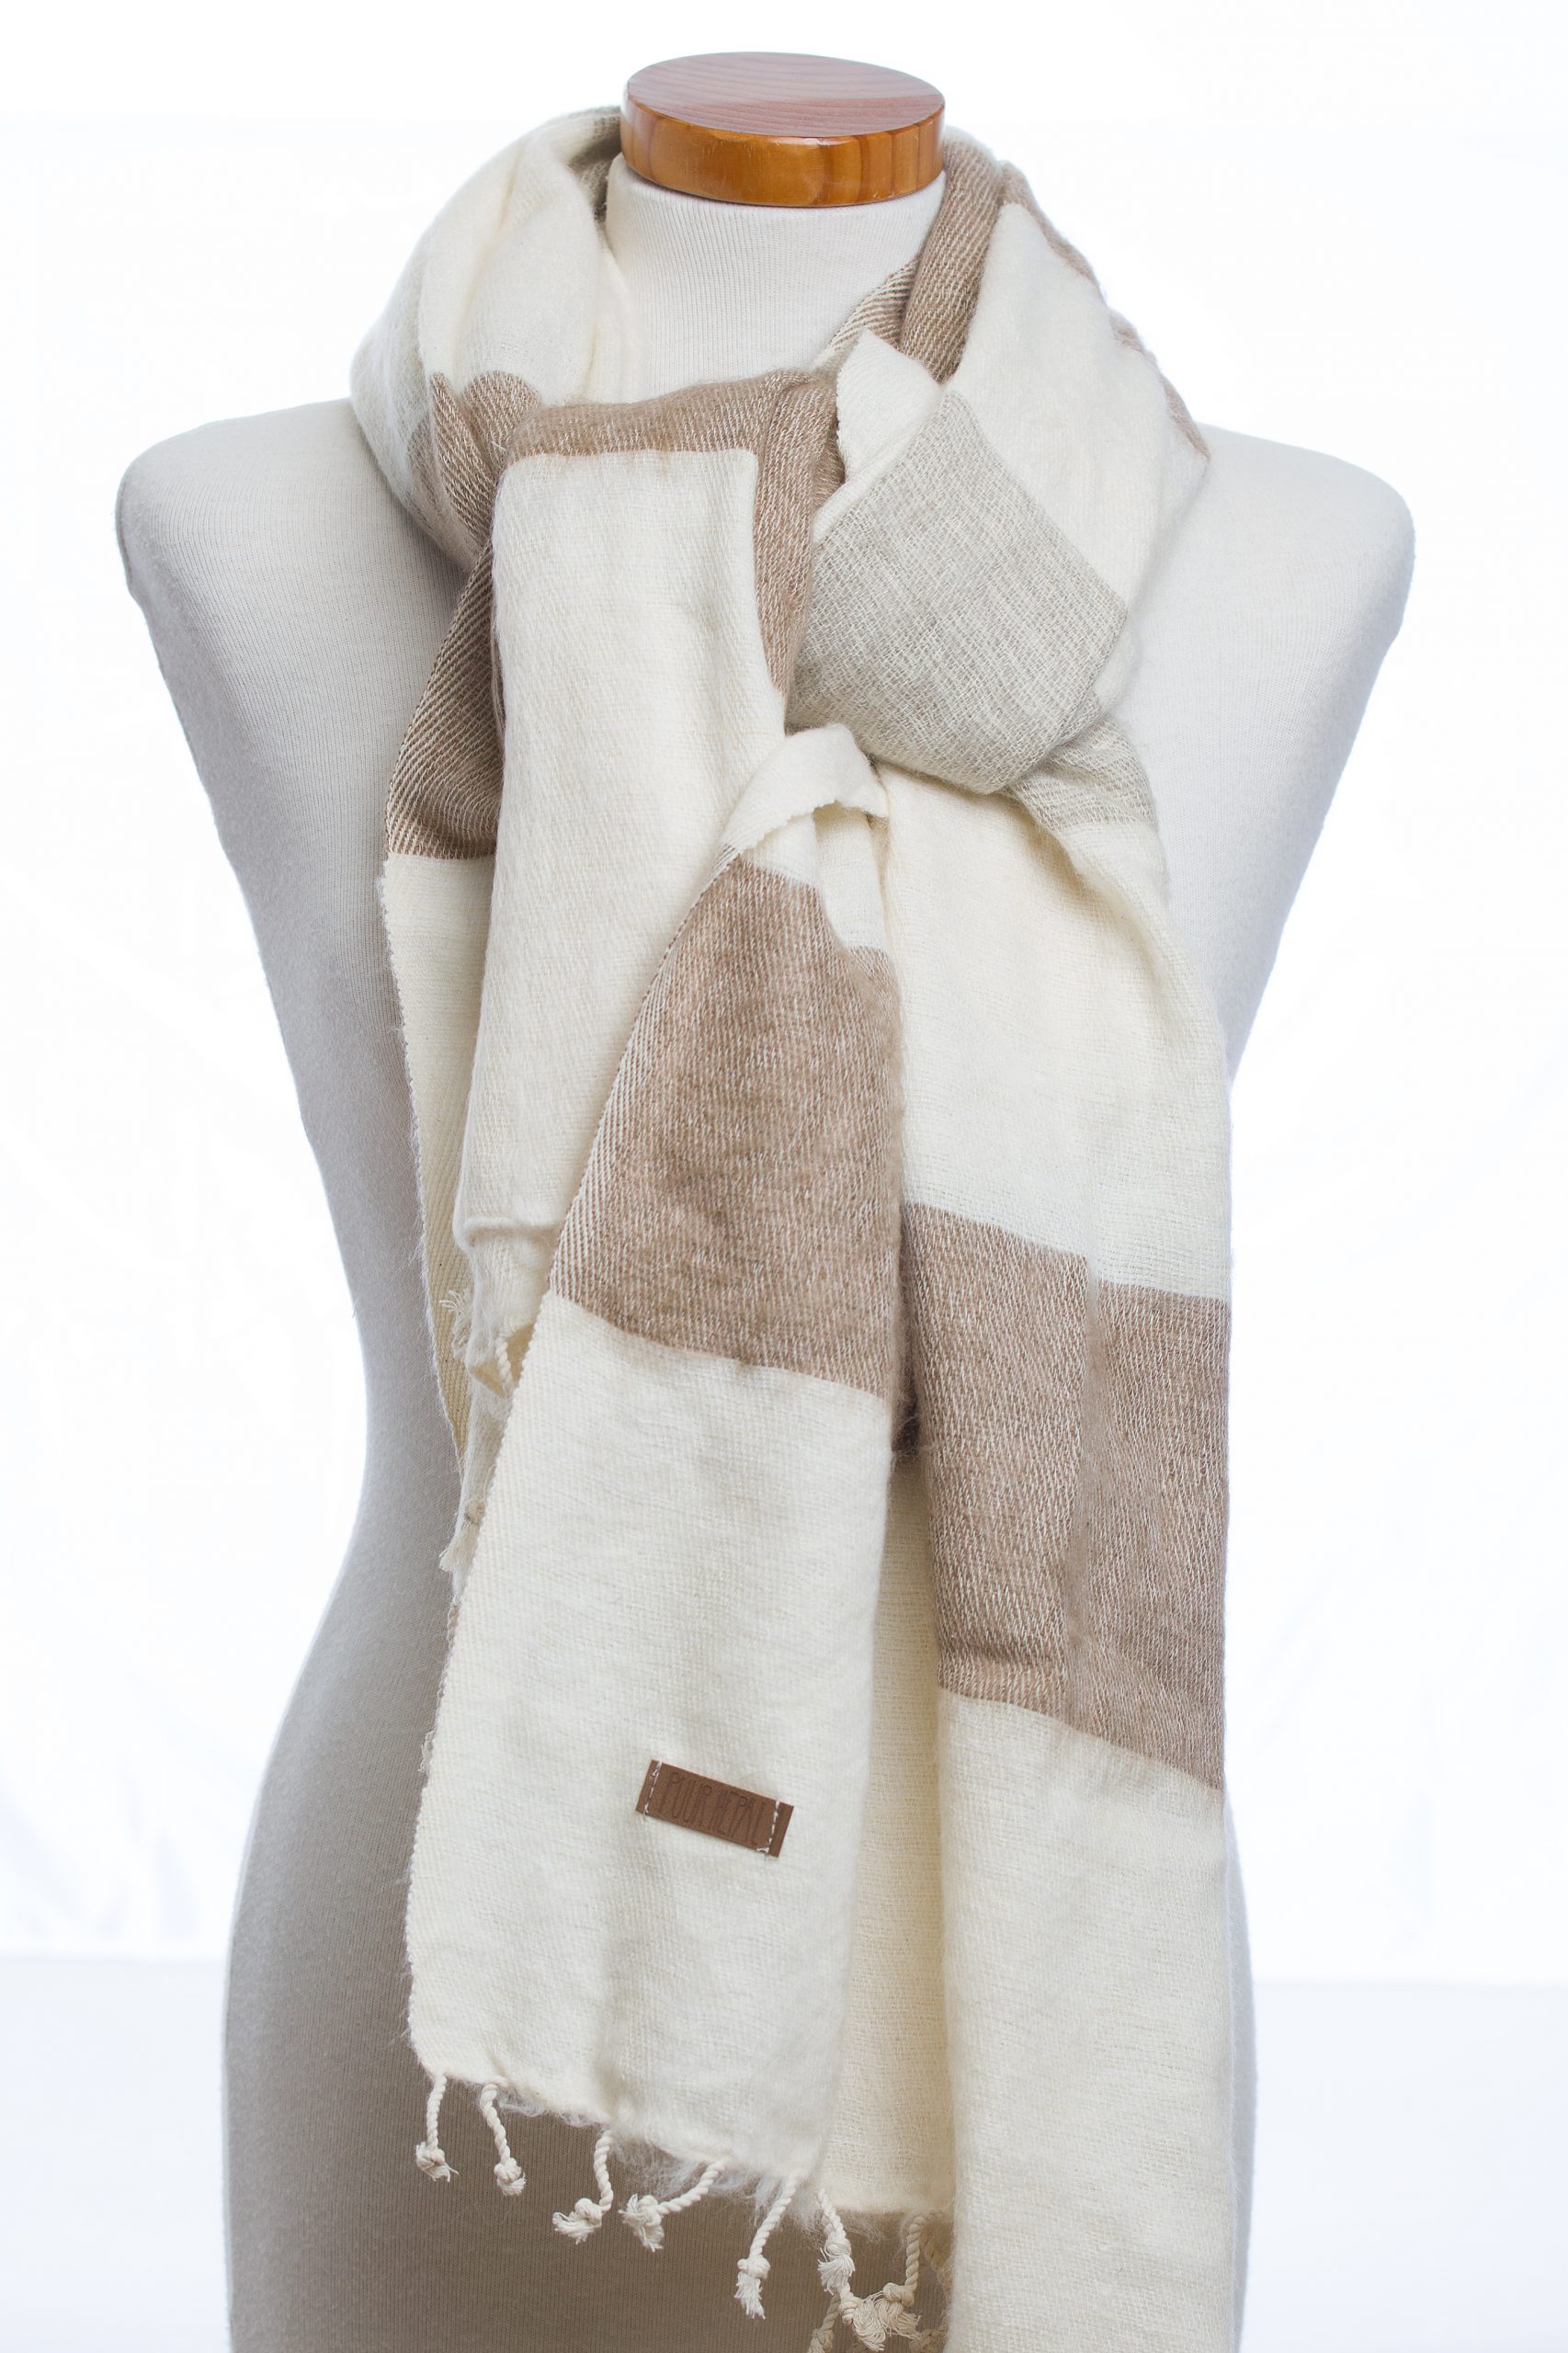 Beige sjaal Handgemaakte geschenken Zachte Kasjmier sjaal Accessoires Sjaals & omslagdoeken Sjaals "40 X 80" inch Cadeau voor haar Traditioneel naaldwerk hand borduurwerk wrap 